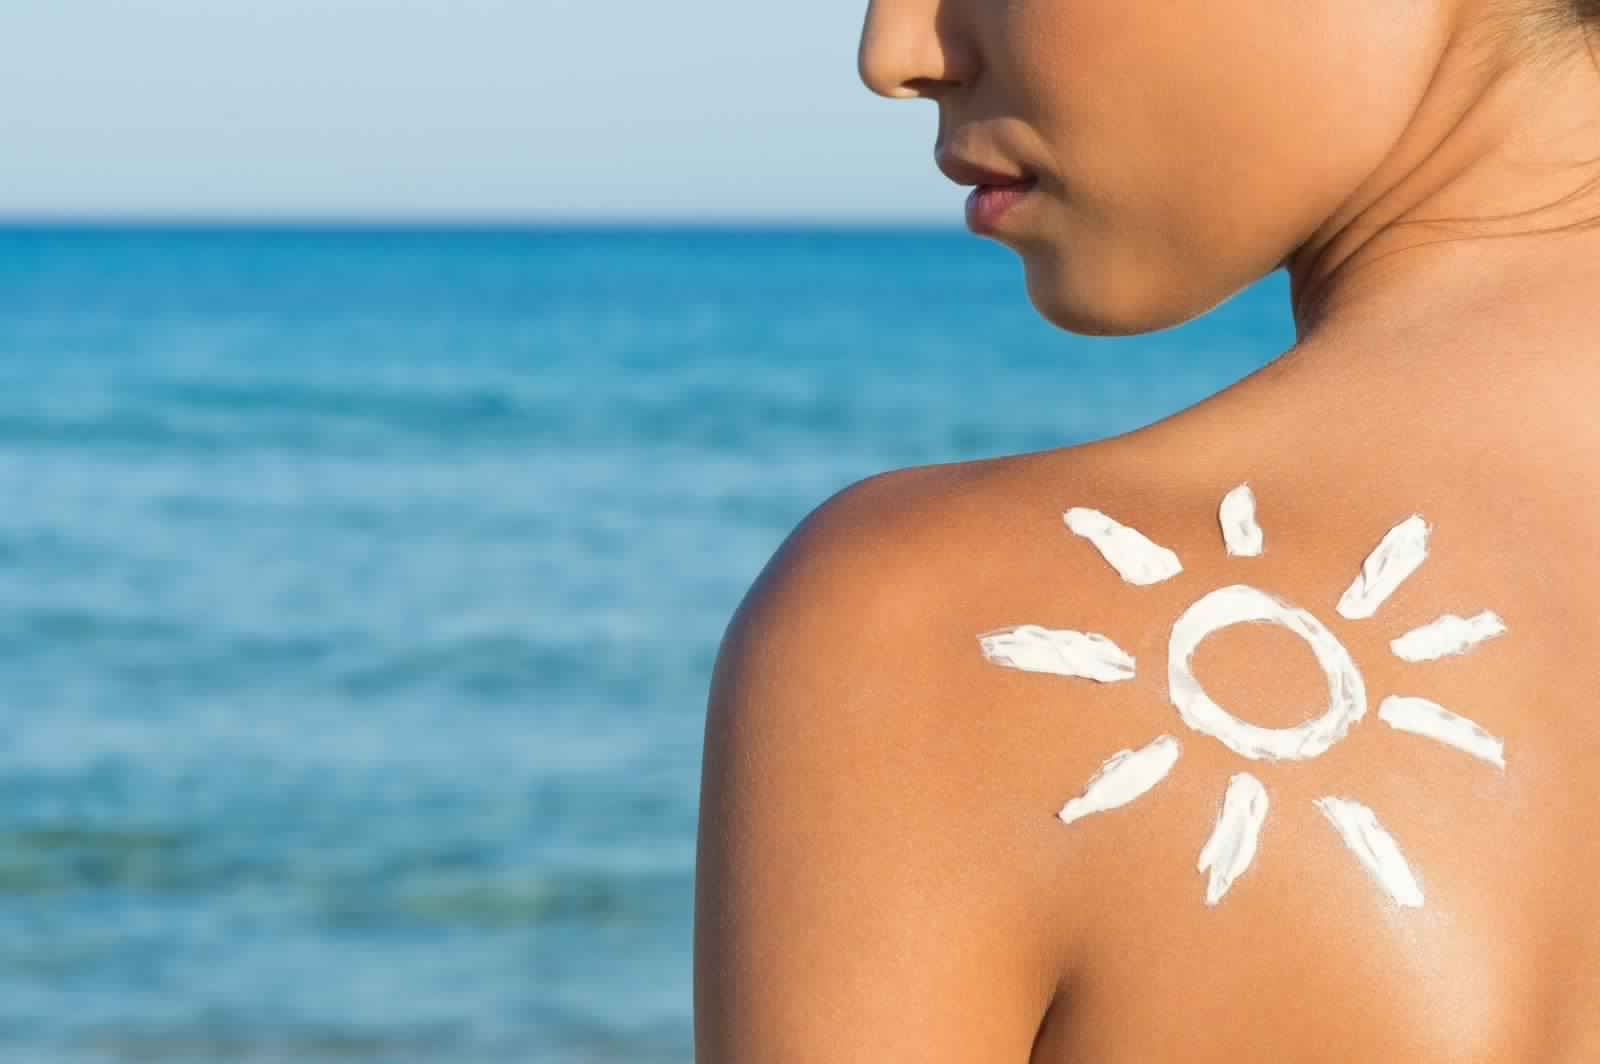 وصفات منزلية للحصول على بشرة برونزية من دون التعرض لأشعة الشمس